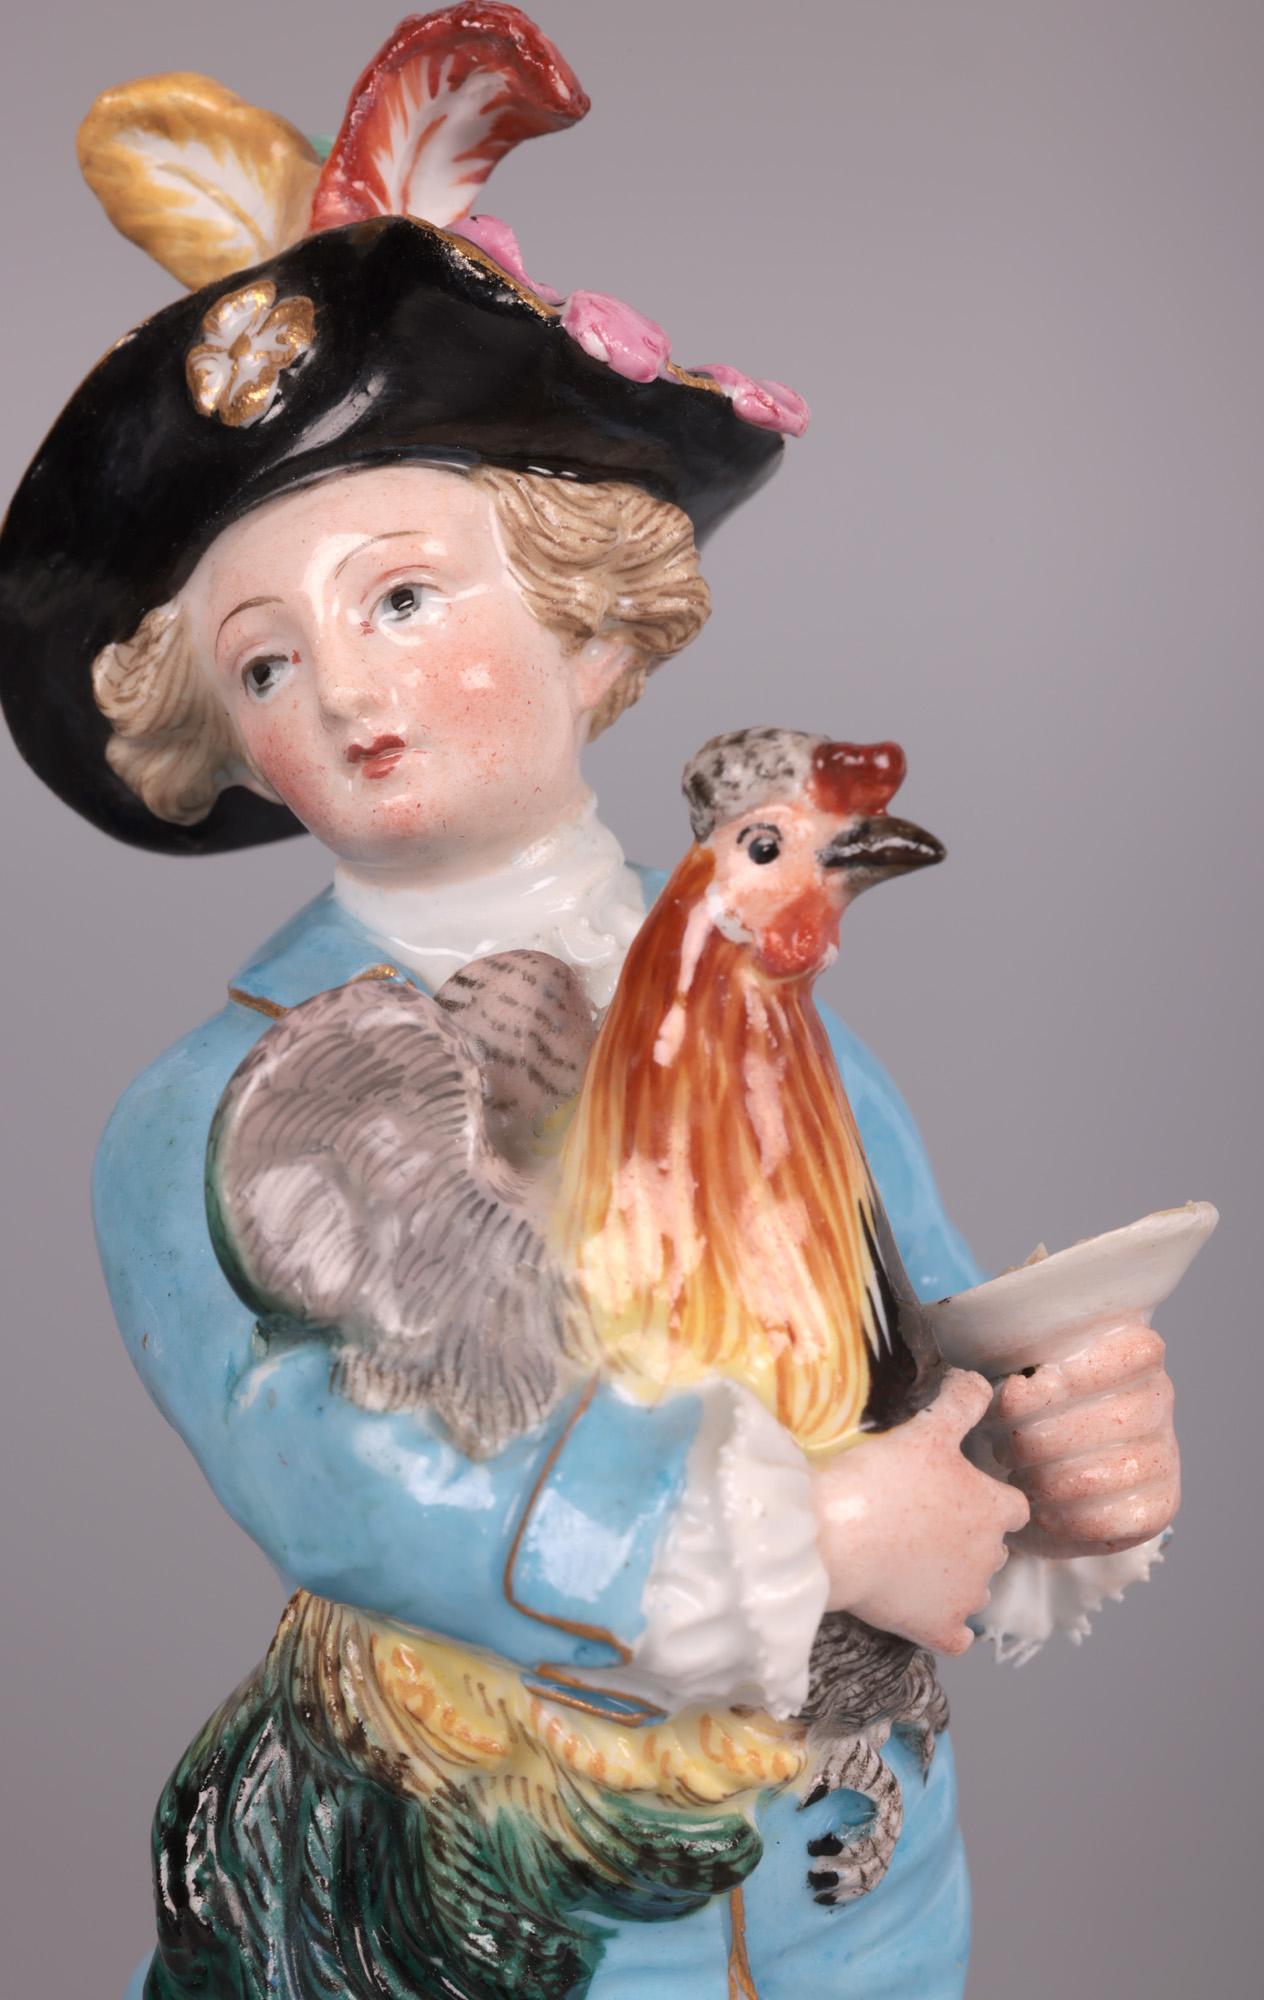 Rare et étonnante paire de figurines en porcelaine allemande tenant des oiseaux, attribuée à Johann Joachim Kändler (allemand 1706 - 1775) pour le célèbre fabricant Meissen et datant du 19e siècle. 

Johann Joachim Kändler est entré à Meissen en